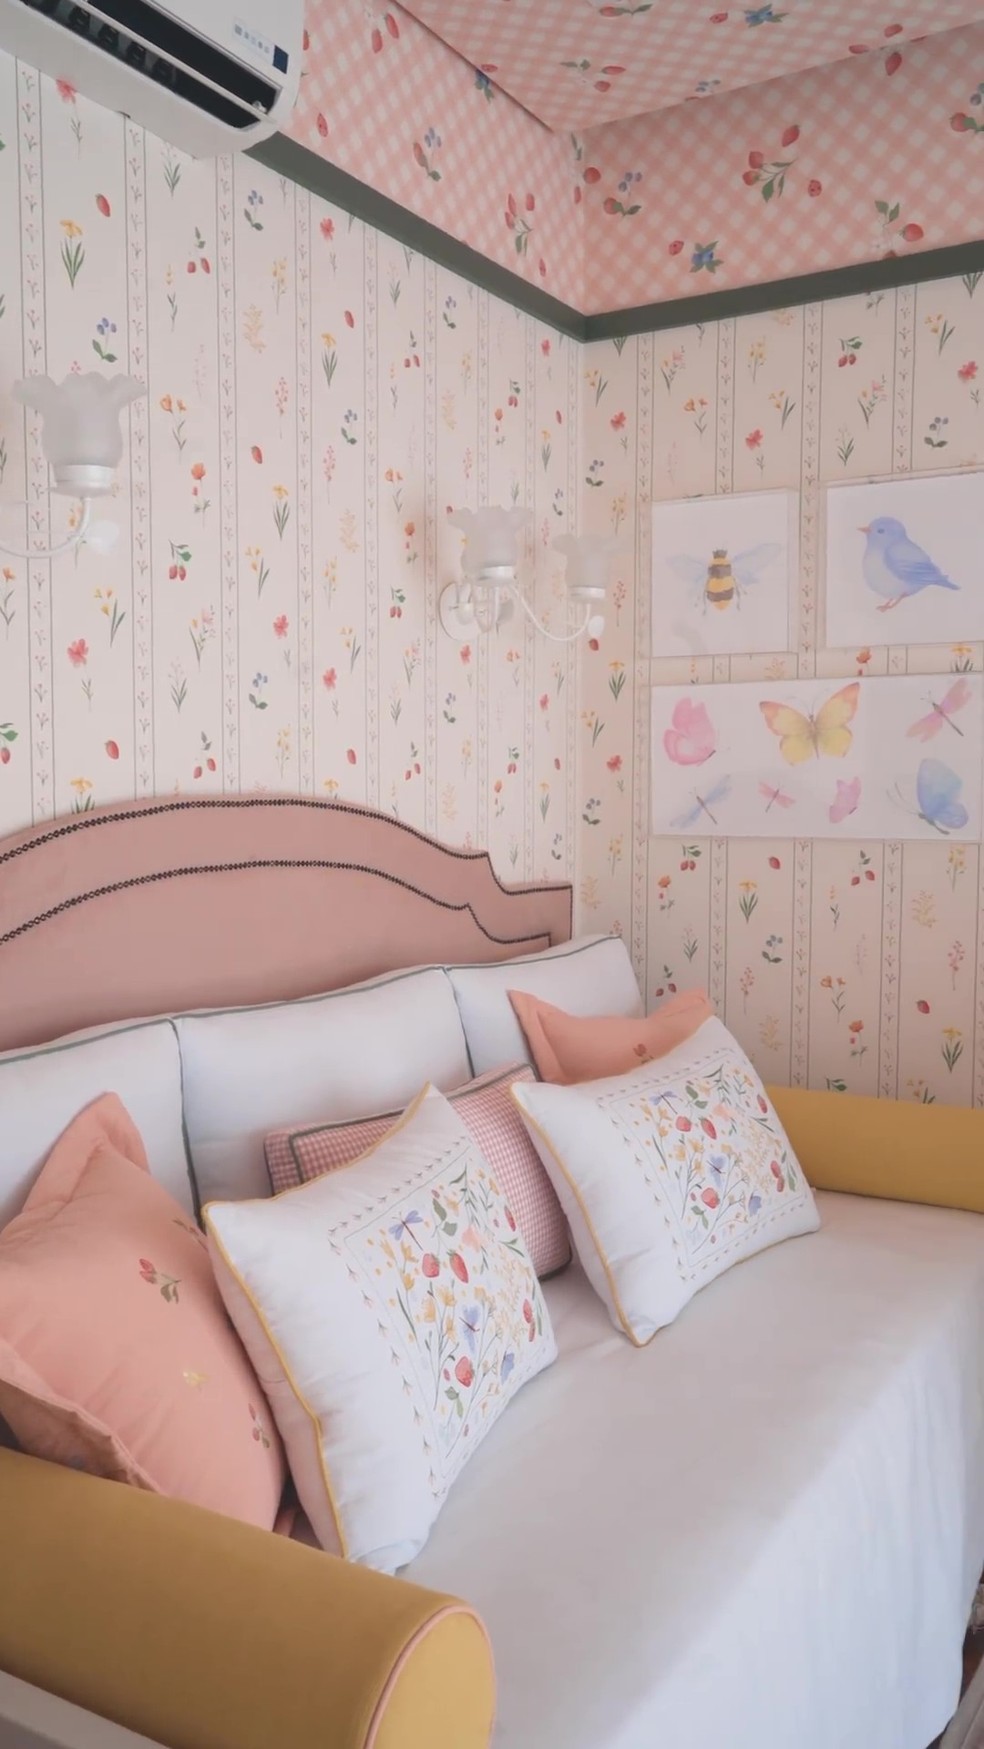 O enxoval da cama, berço, almofadas, trocador, toalhas, fraldinhas e mantas é da Algoducci (@algoducci). Os papéis de parede são da JVN (@jvnpapeisdeparede) — Foto: Instagram / Reprodução